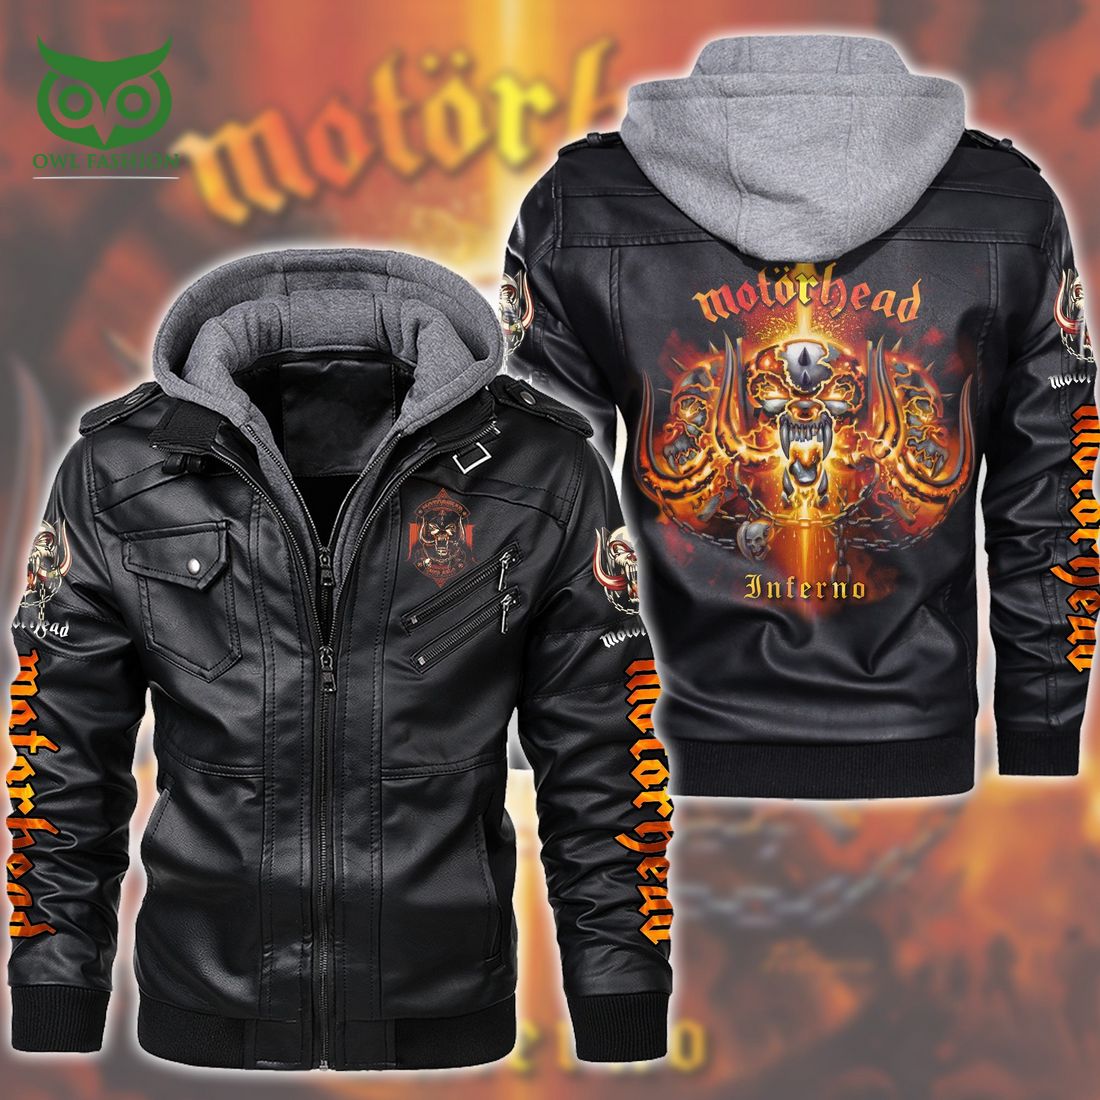 Motorhead Inferno Black Leather Jacket